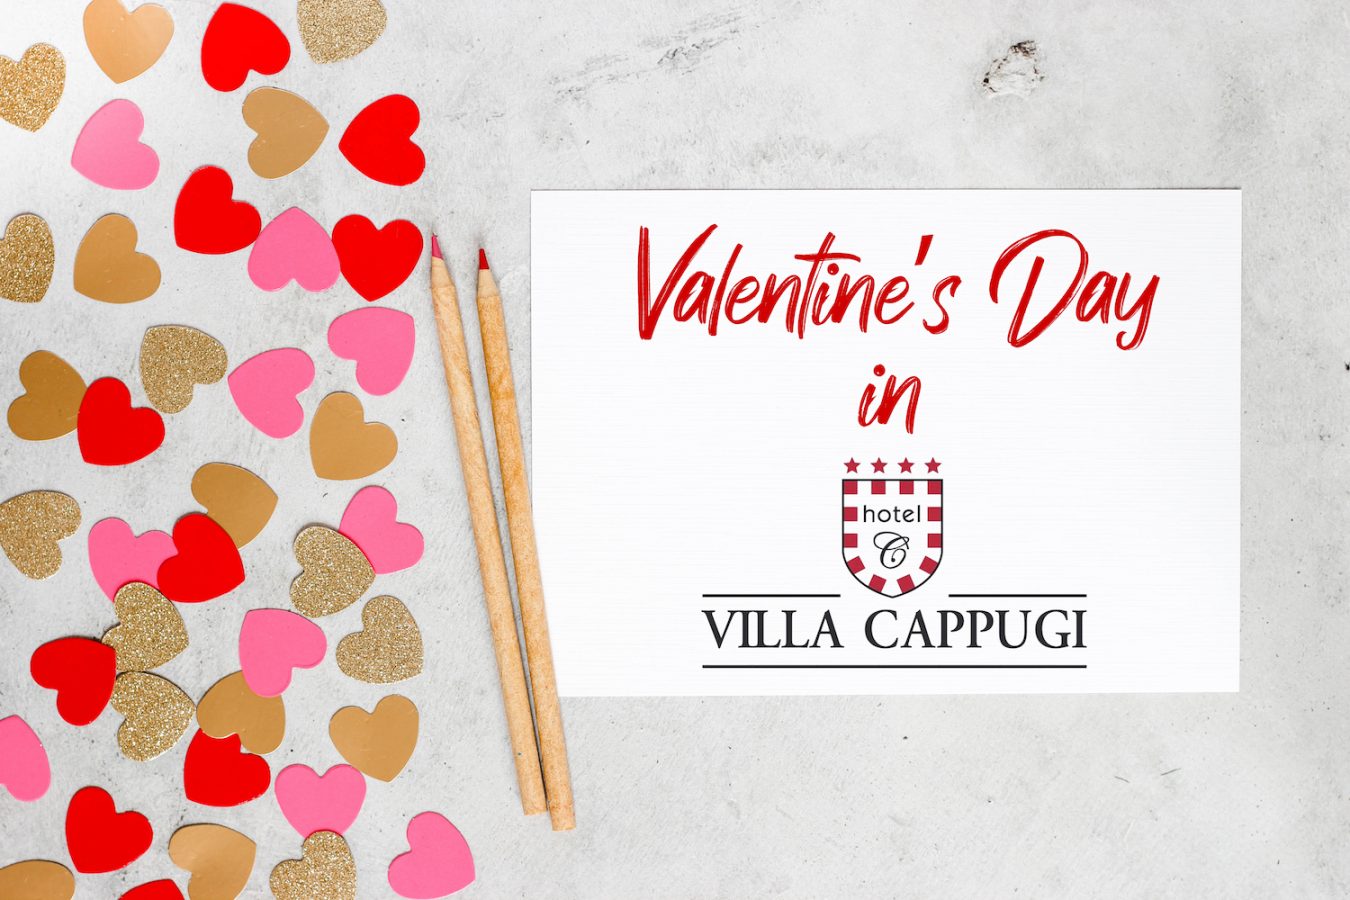 San Valentino a Villa Cappugi a Pistoia